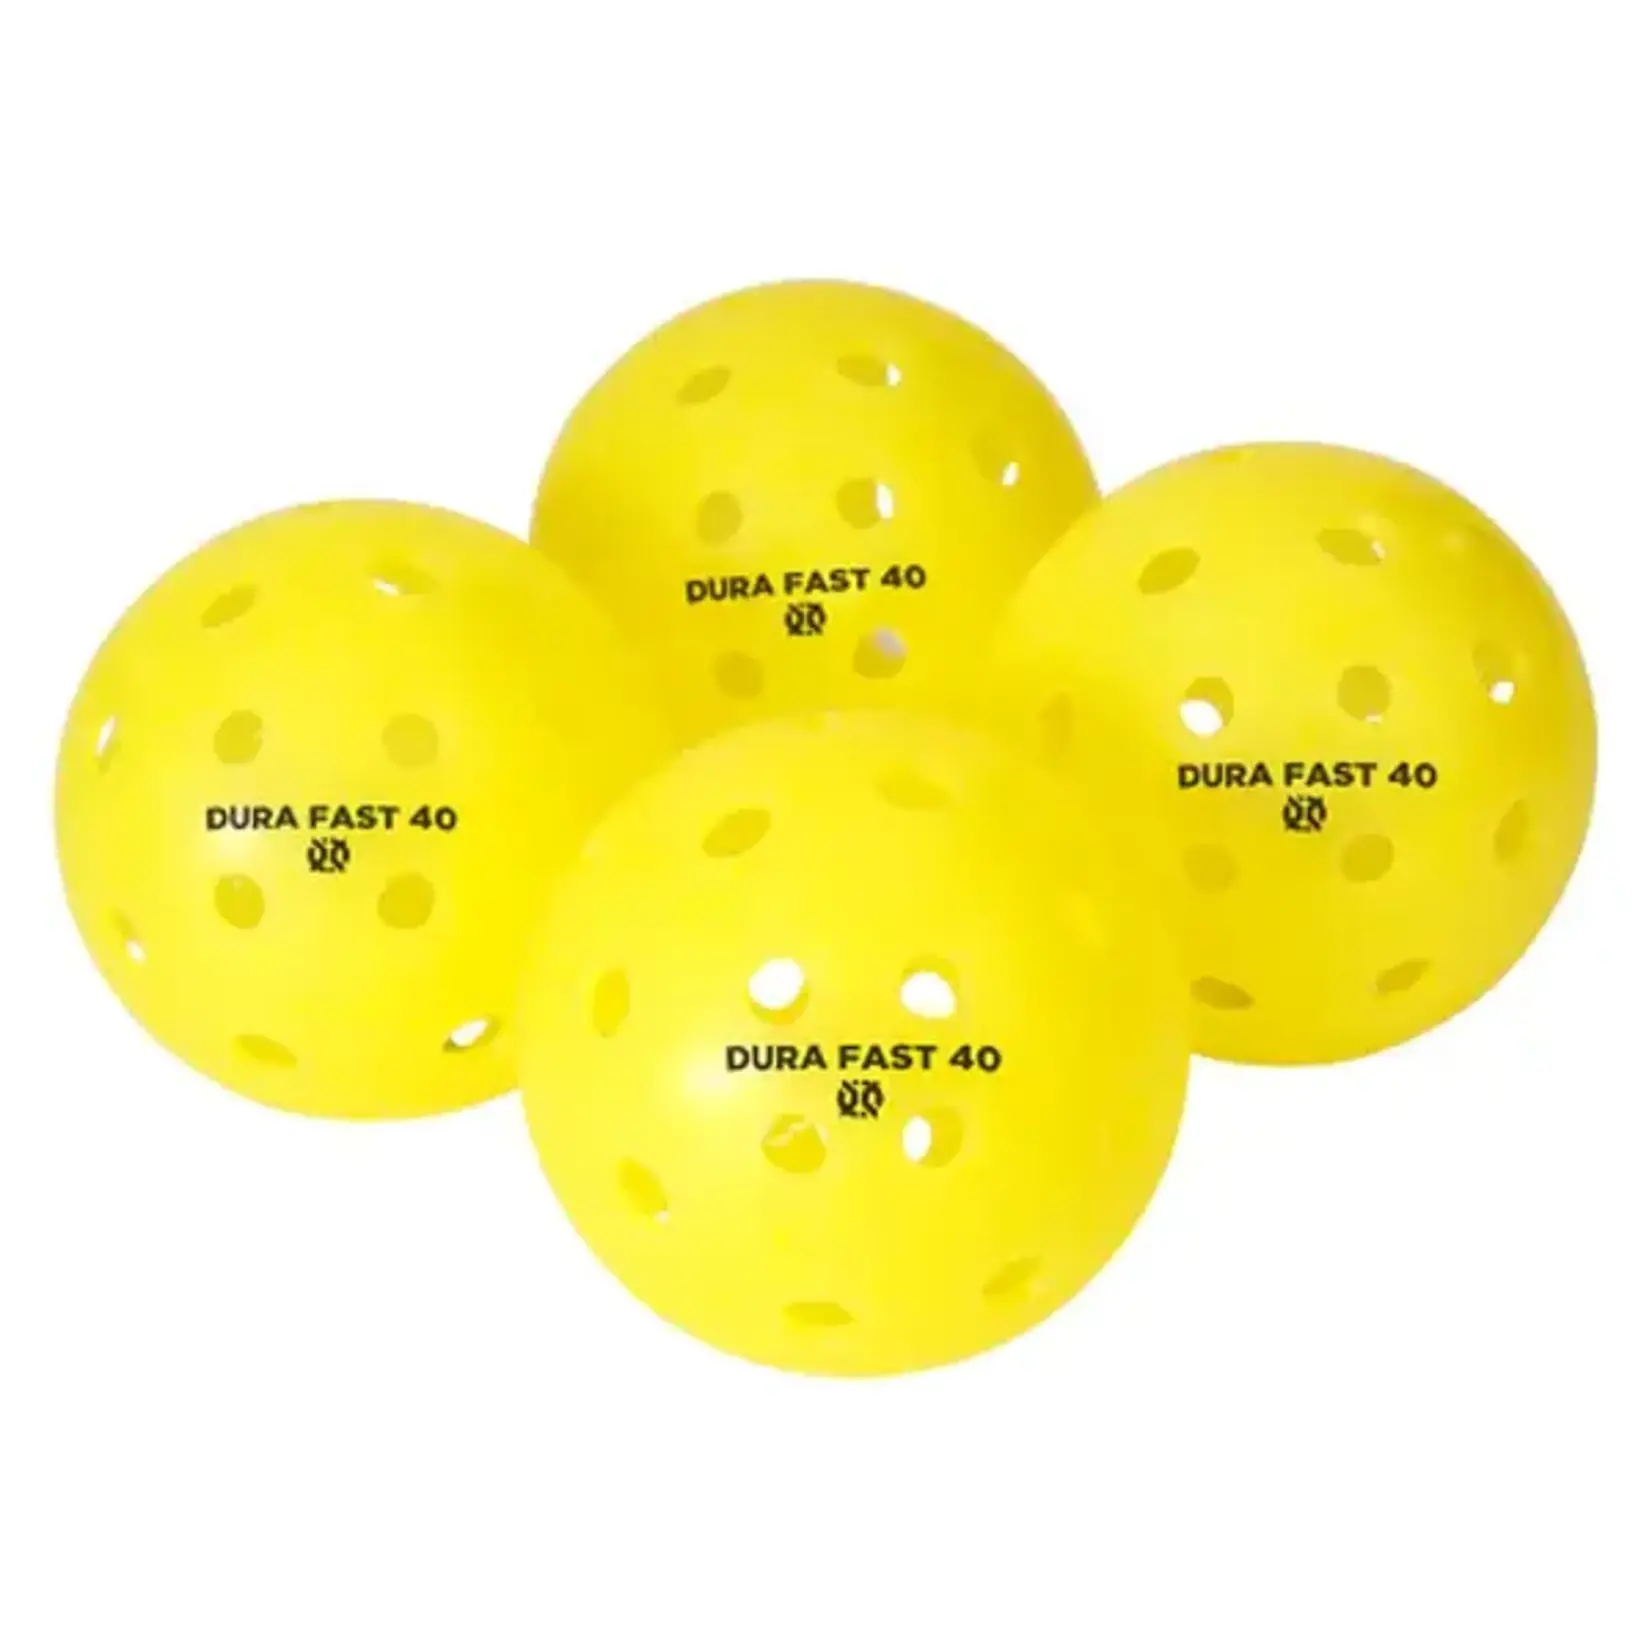 Onix Onix DuraFast 40 Balls (4 pack)